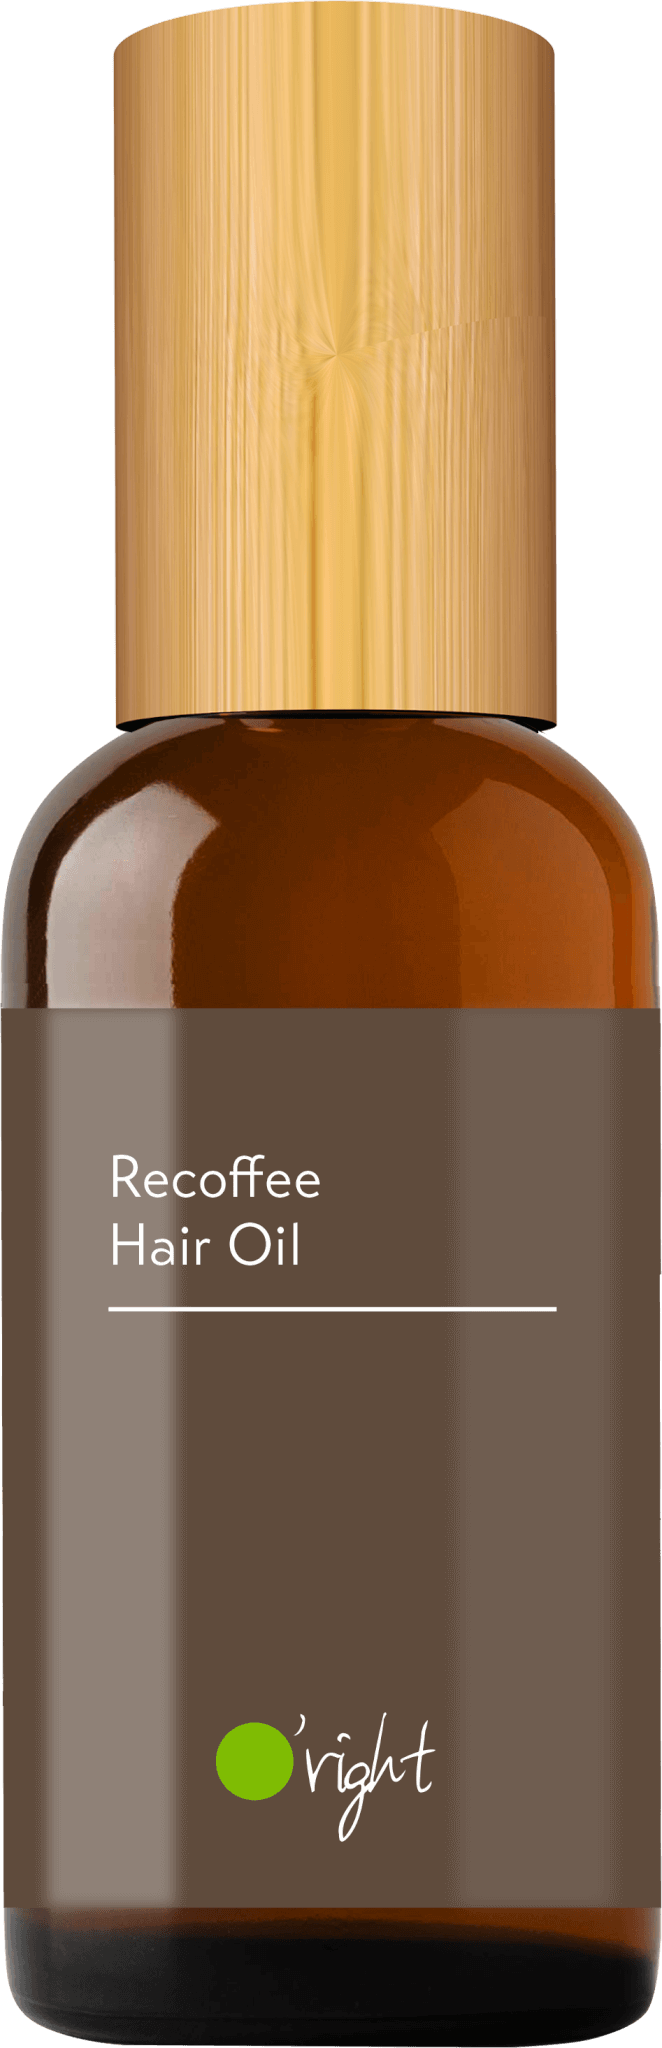 11104011AAAA RECOFFEE Hair Oil 100mL 2021